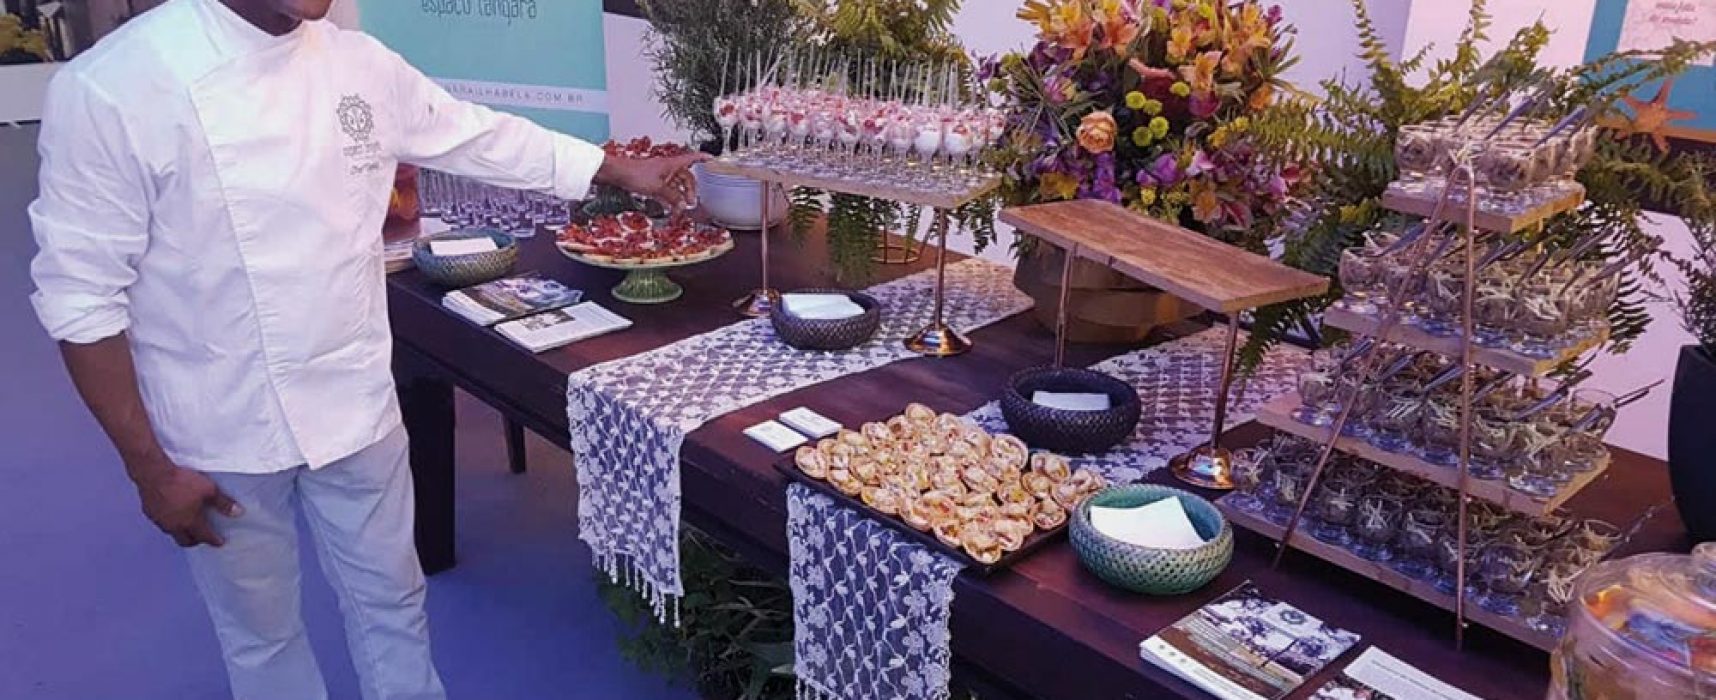 Atelier do Tonhão traz para Ilhabela novo espaço dedicado à gastronomia e eventos